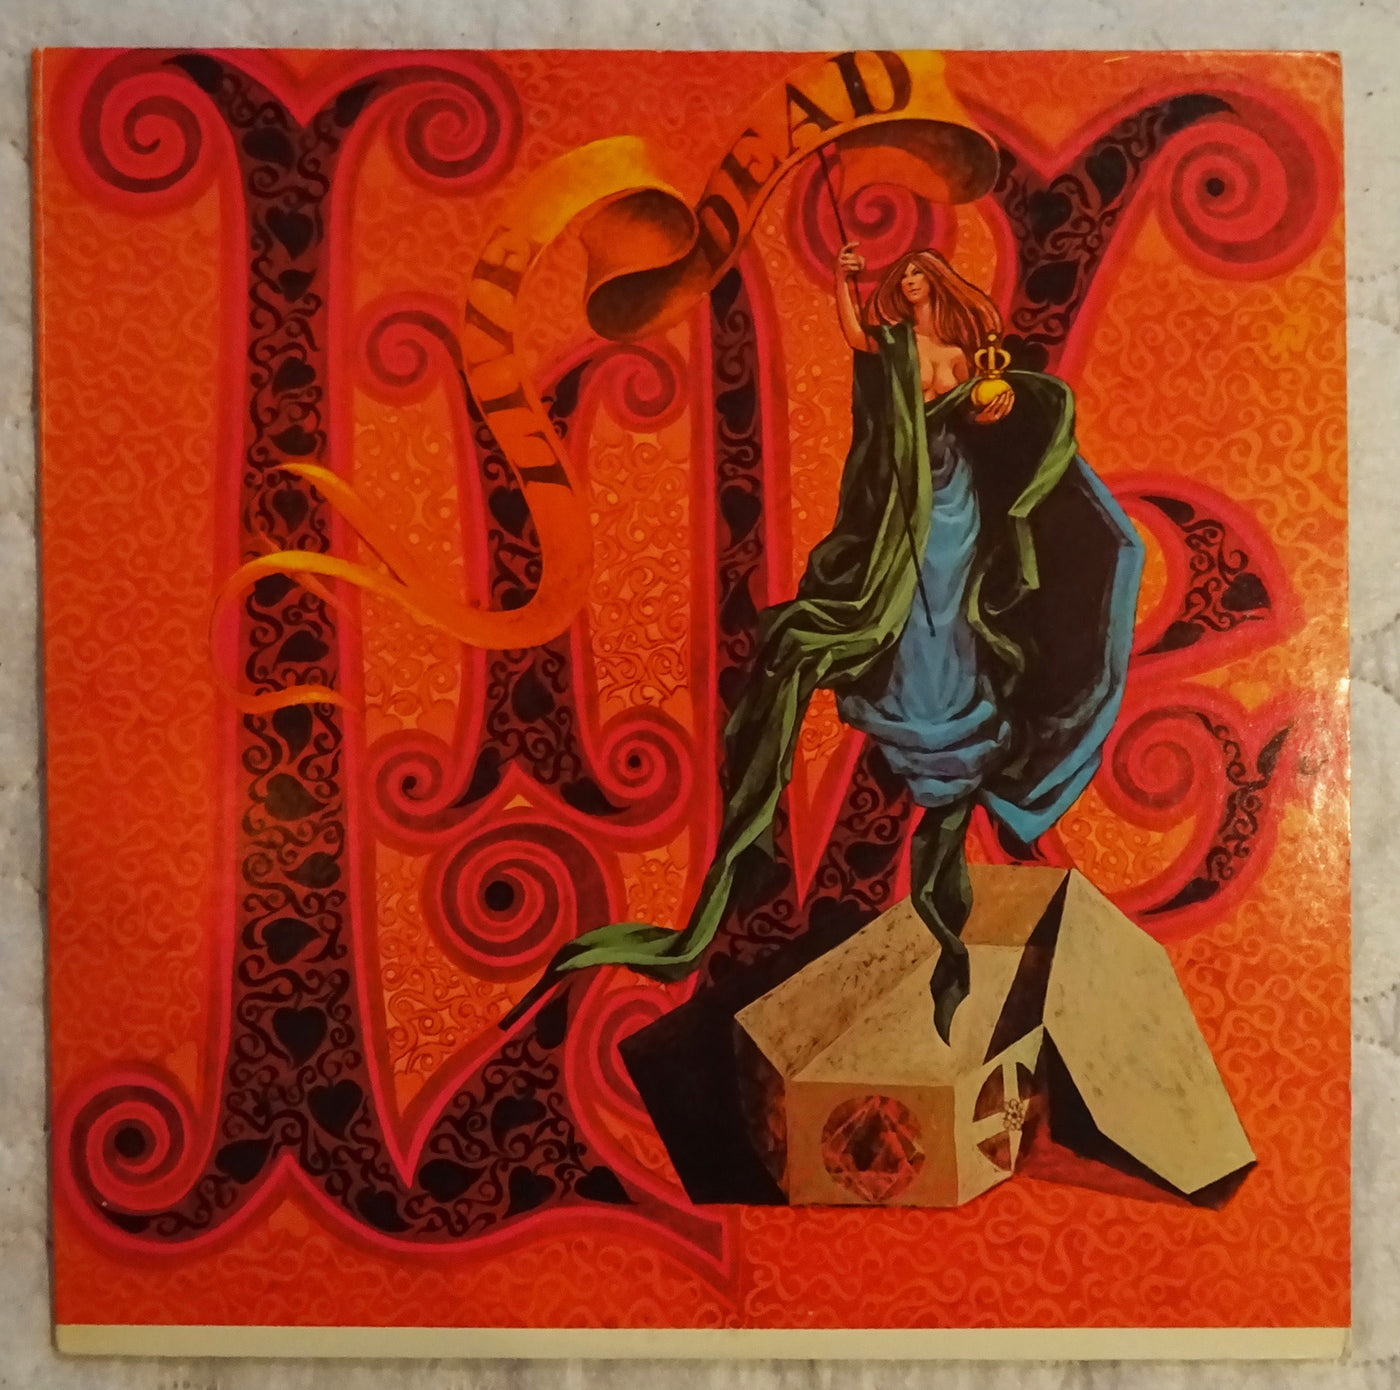 The Grateful Dead Live Dead Vinyl LP 33rpm 1830